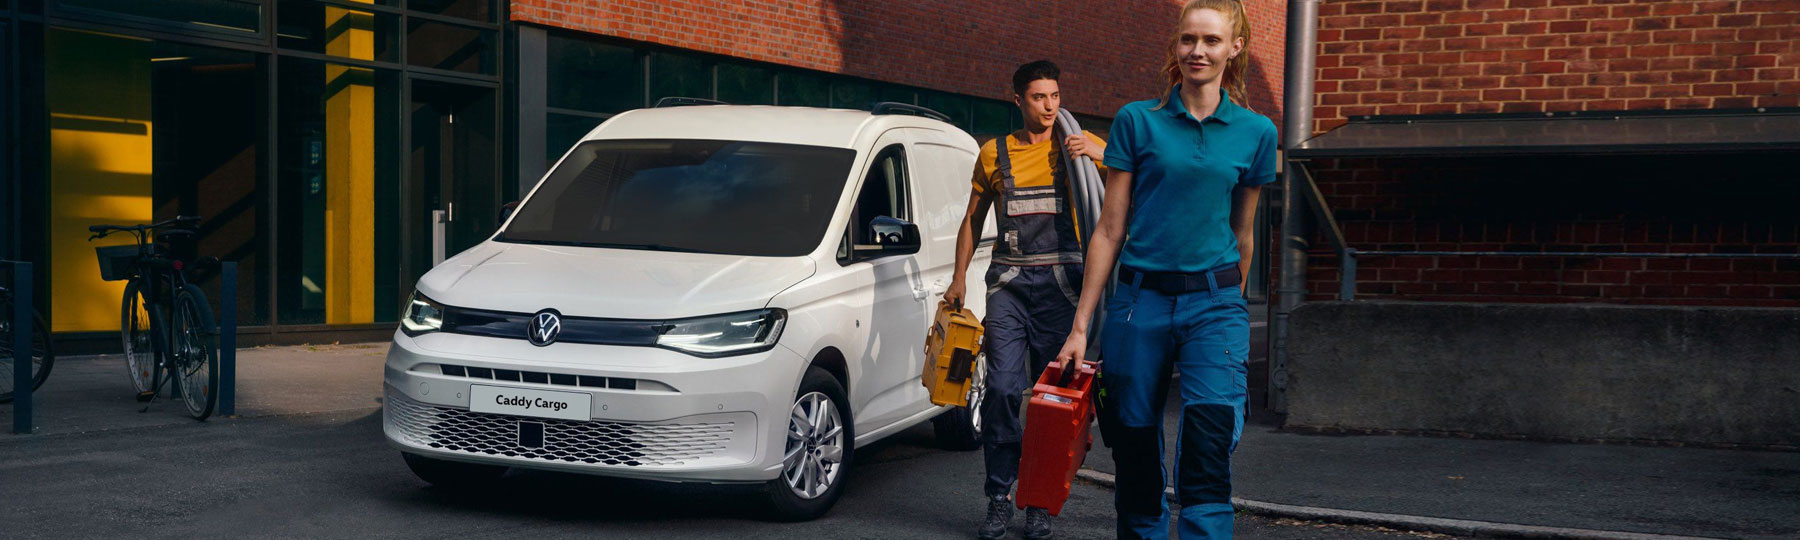 The New Volkswagen Caddy Cargo New Van Offer